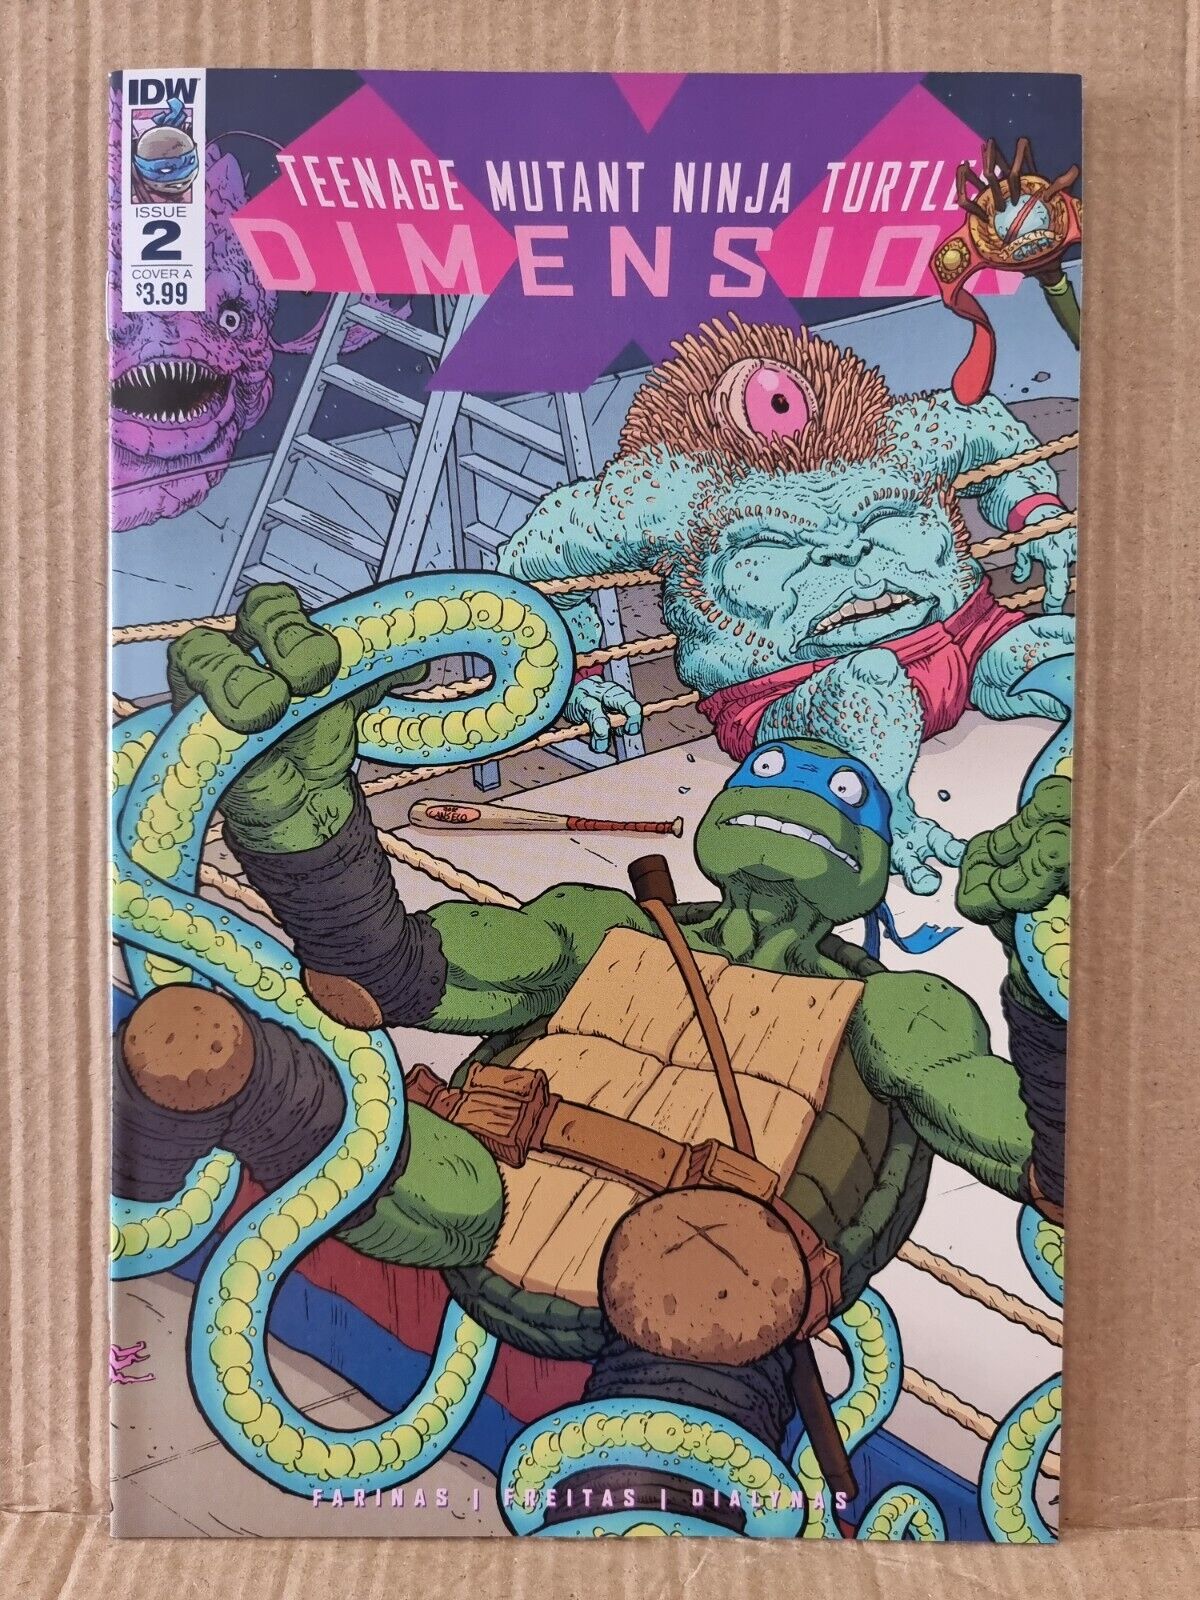 Teenage Mutant Ninja Turtles Dimension X (2017) Issue 02A